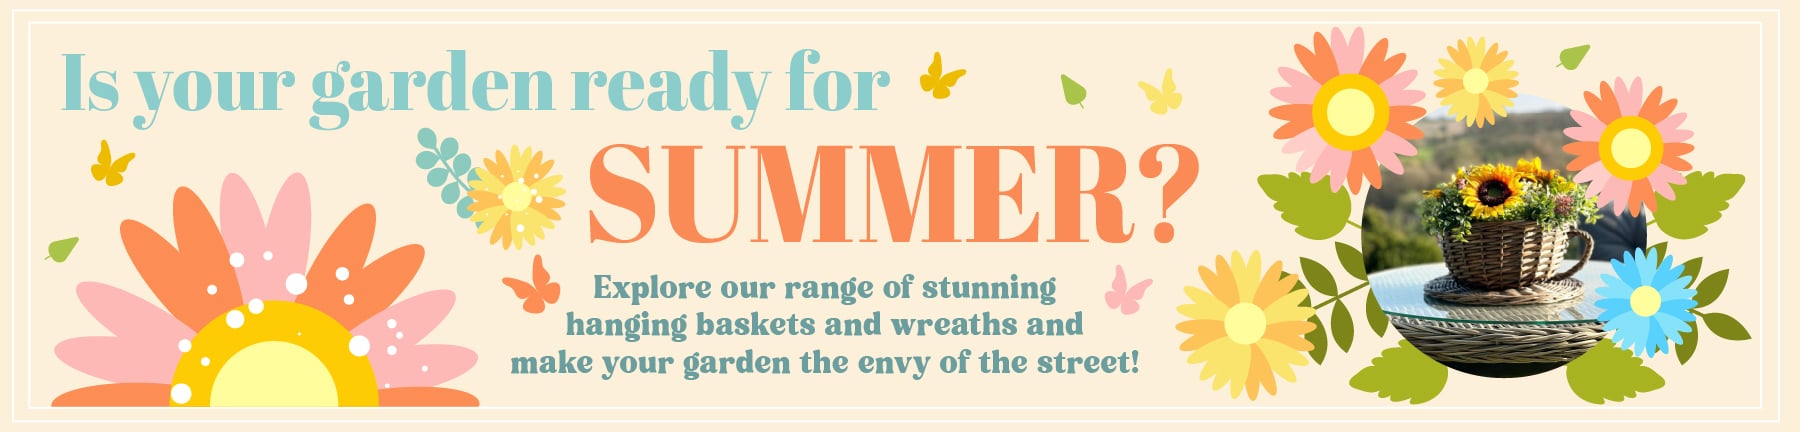 Summer Ready Banner